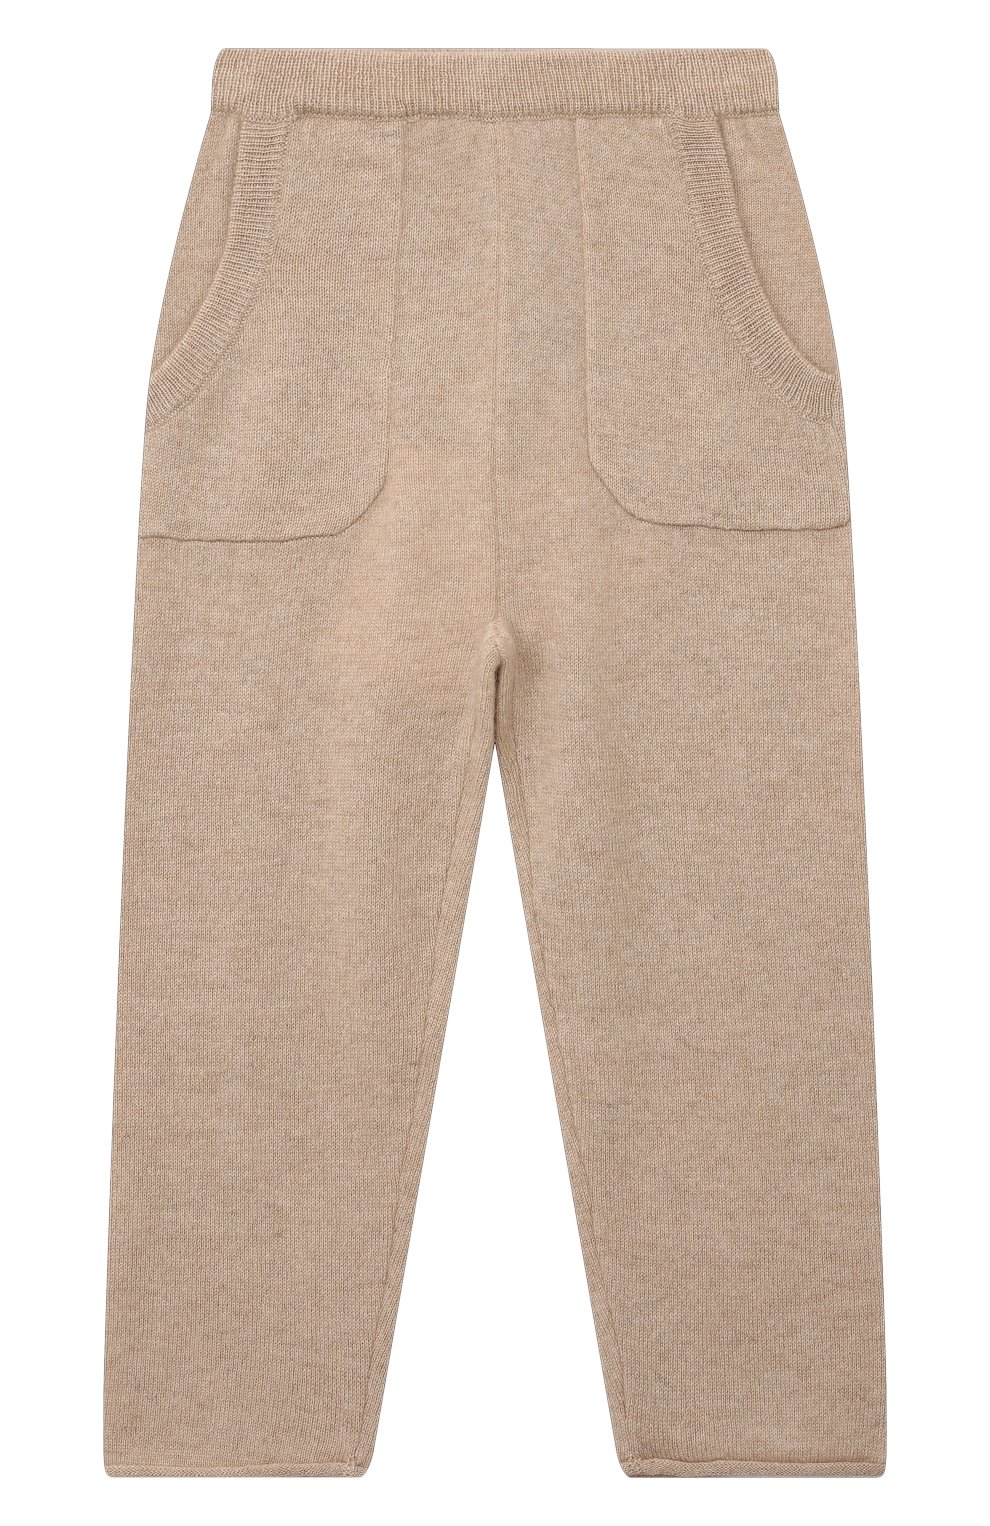 Детские кашемировые брюки OSCAR ET VALENTINE бежевого цвета, арт. PAN0122M | Фото 1 (Материал внешний: Шерсть, Кашемир)